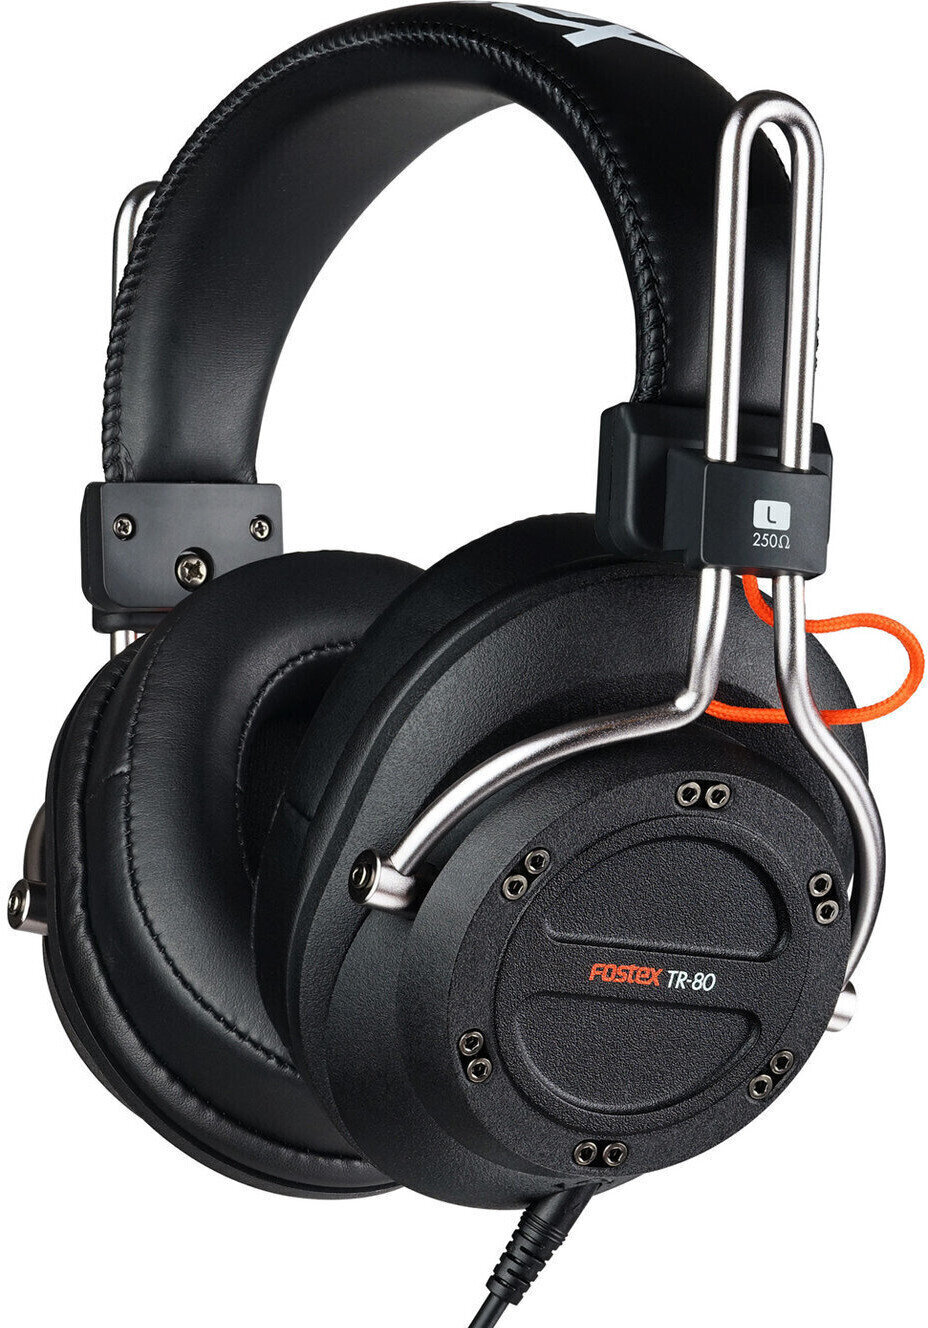 Studio-kuulokkeet Fostex TR-80 250 Ohm